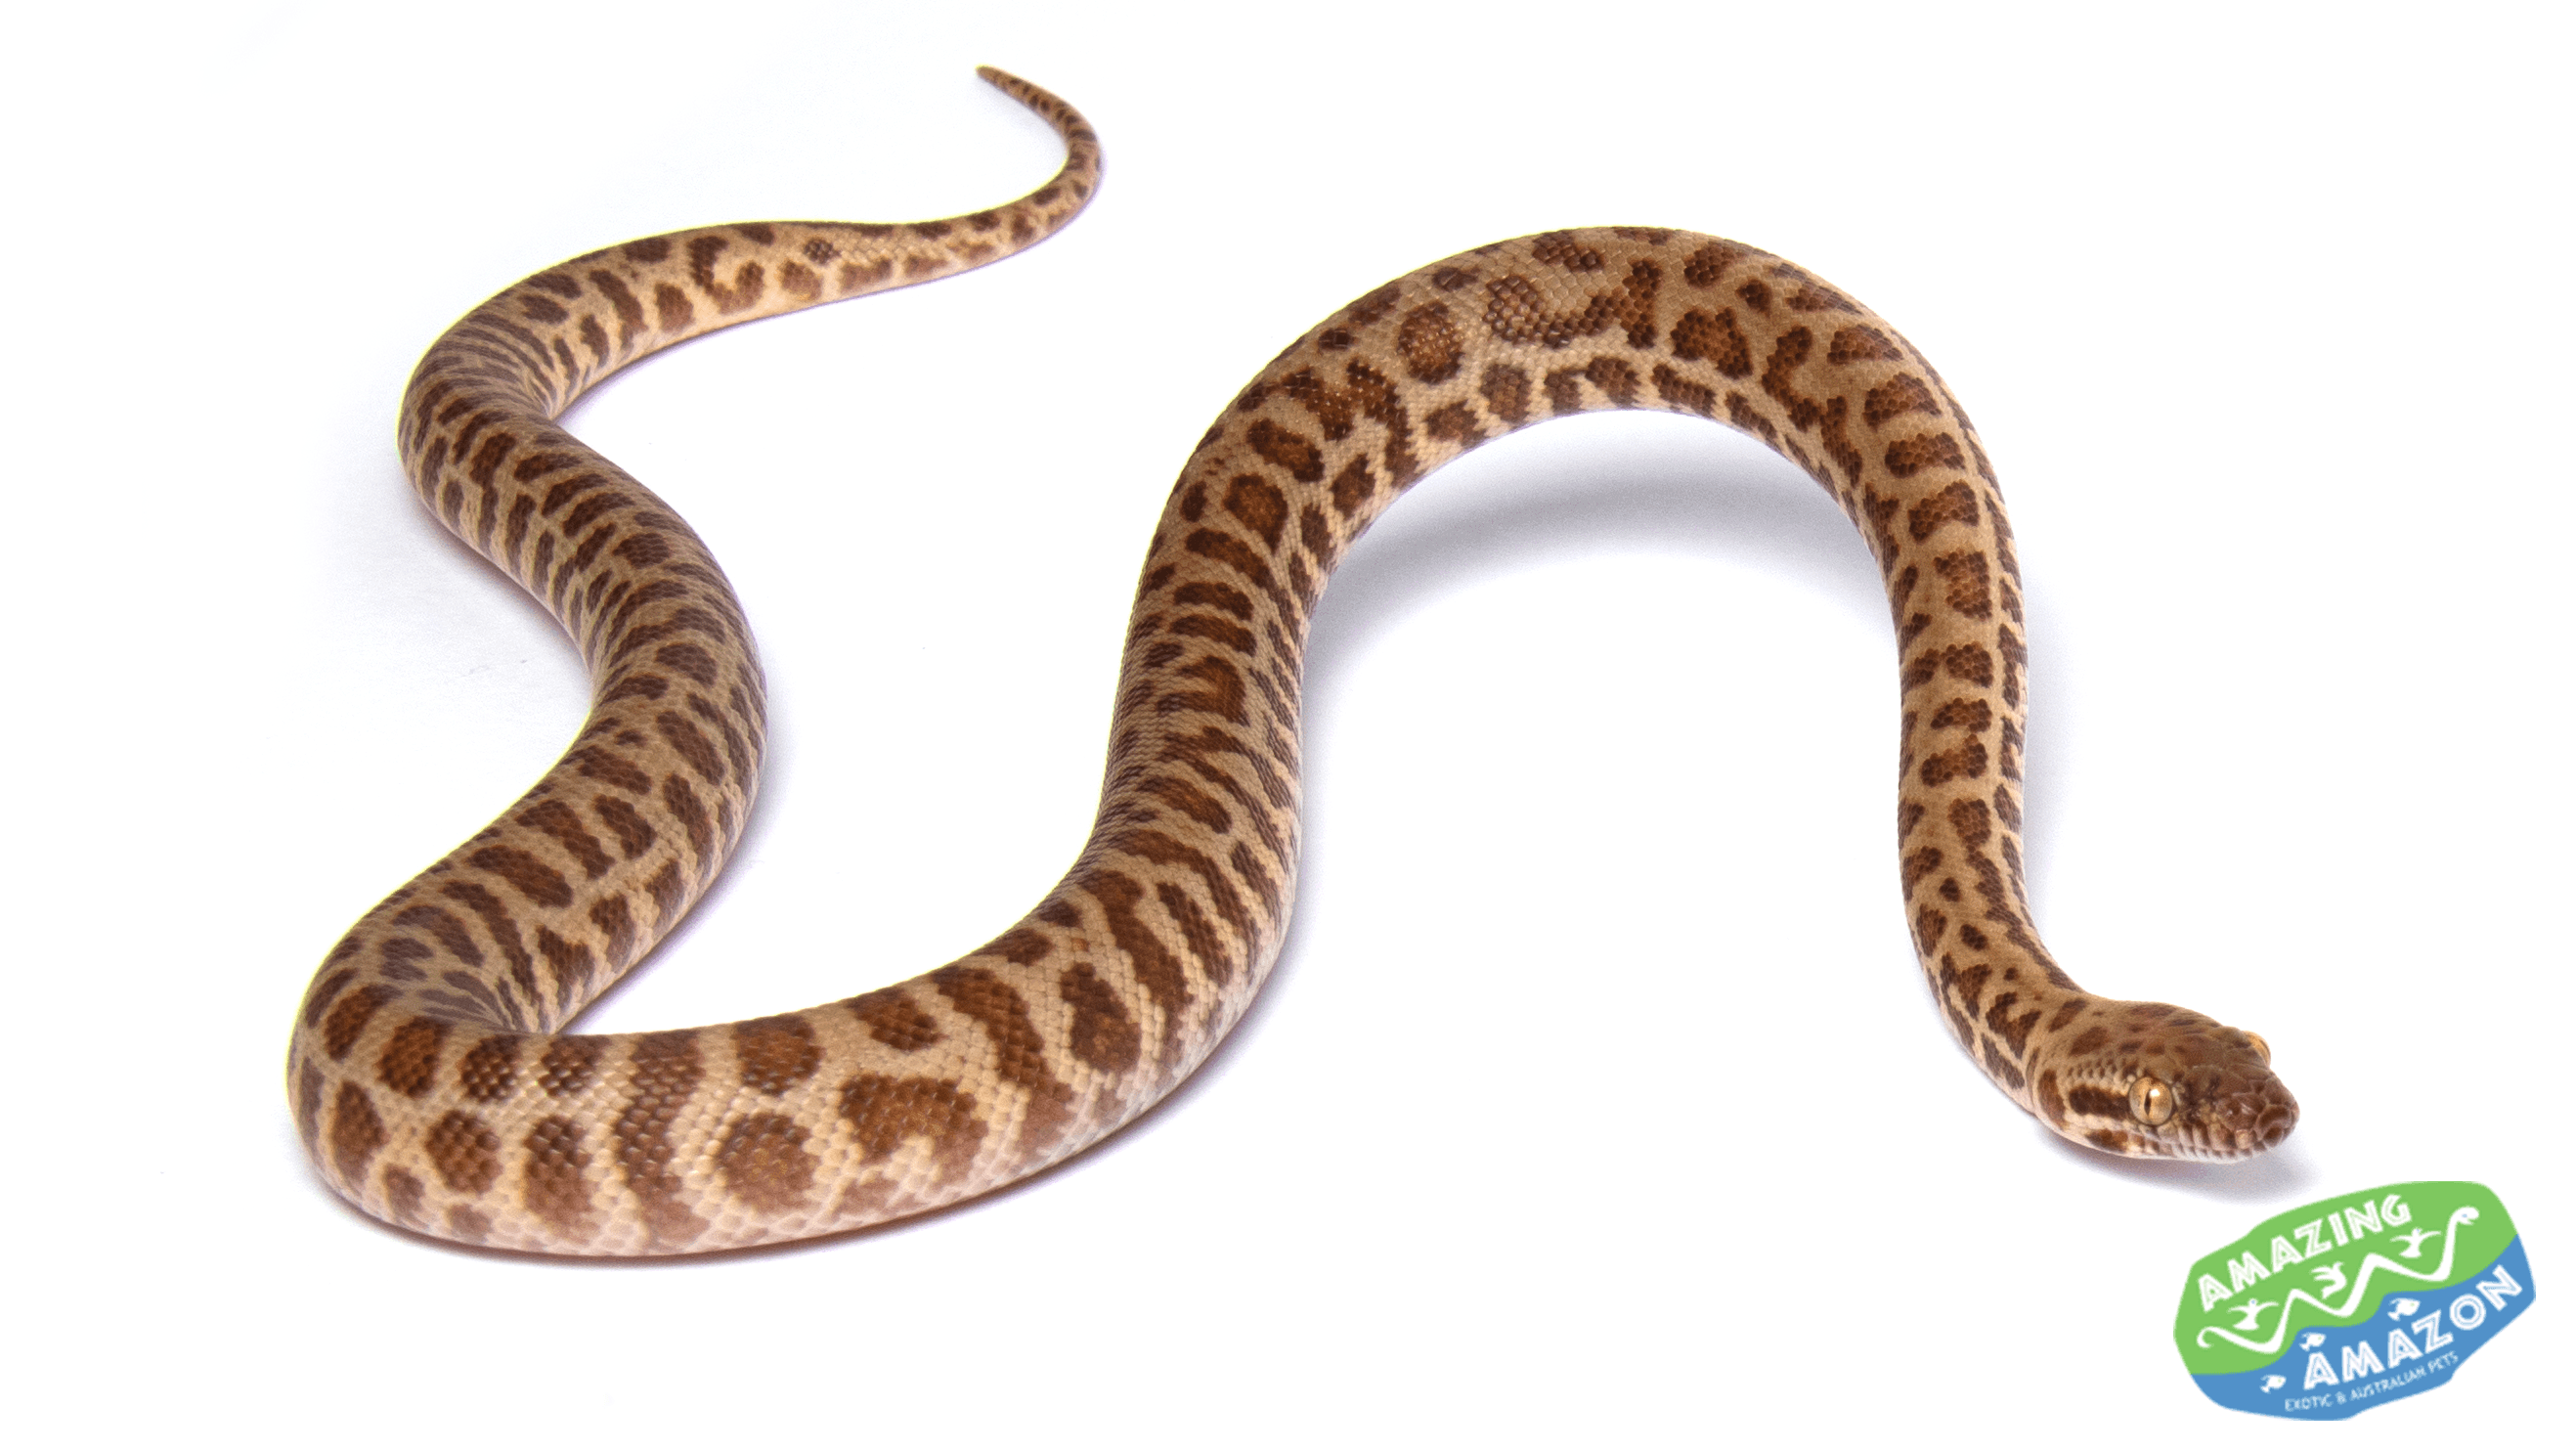 Stimsons Python, Aquarium and Reptiles